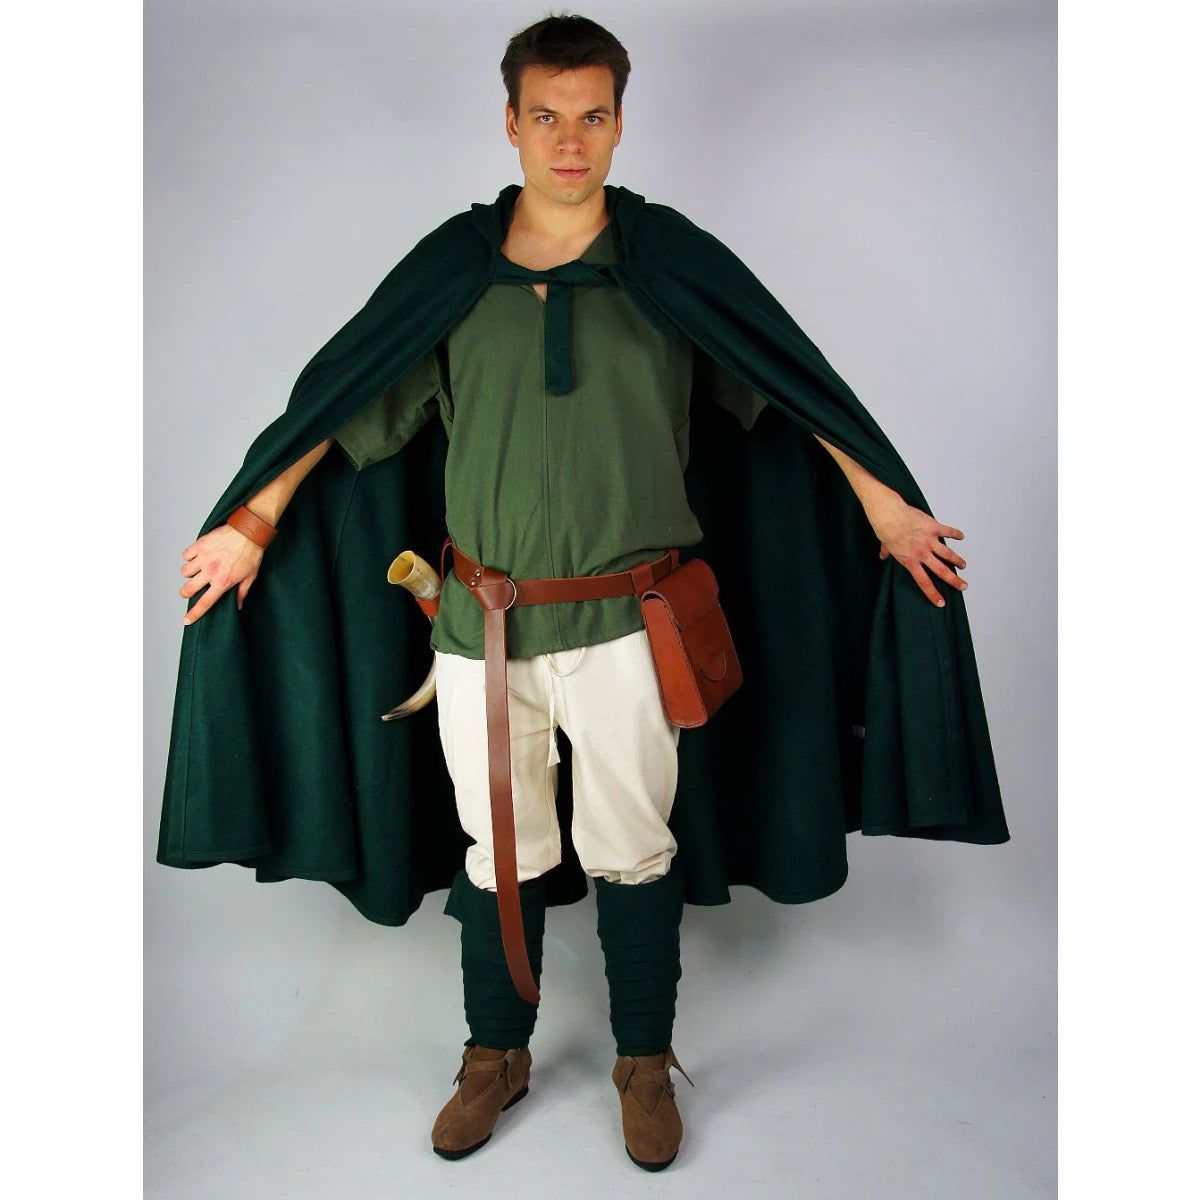 Renaissance Era Woolen Cloak with Hood | Versatile Full-Length Historical Garment